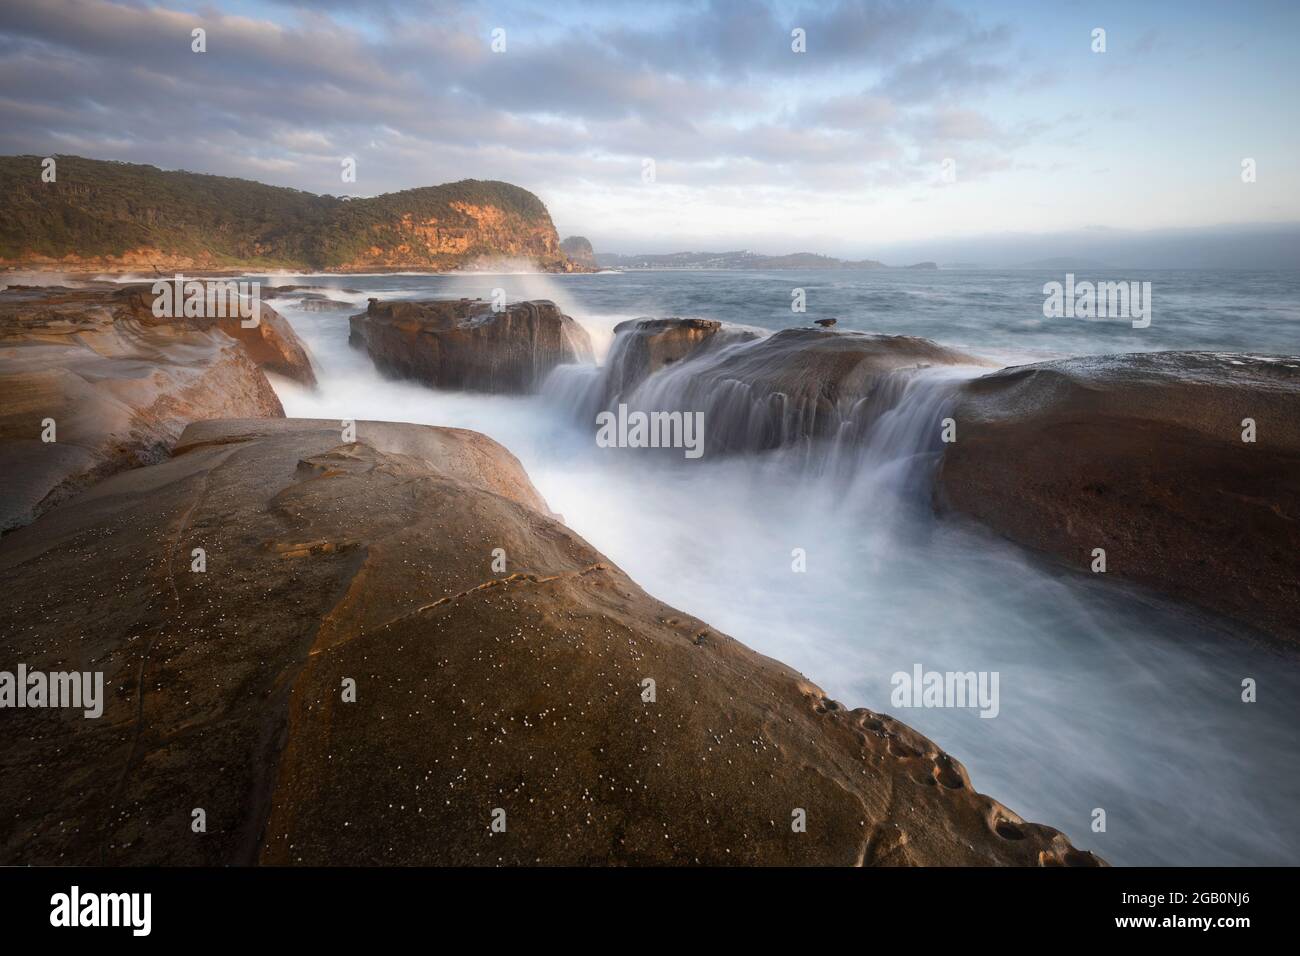 cascade sur les rochers de la plage le matin Banque D'Images